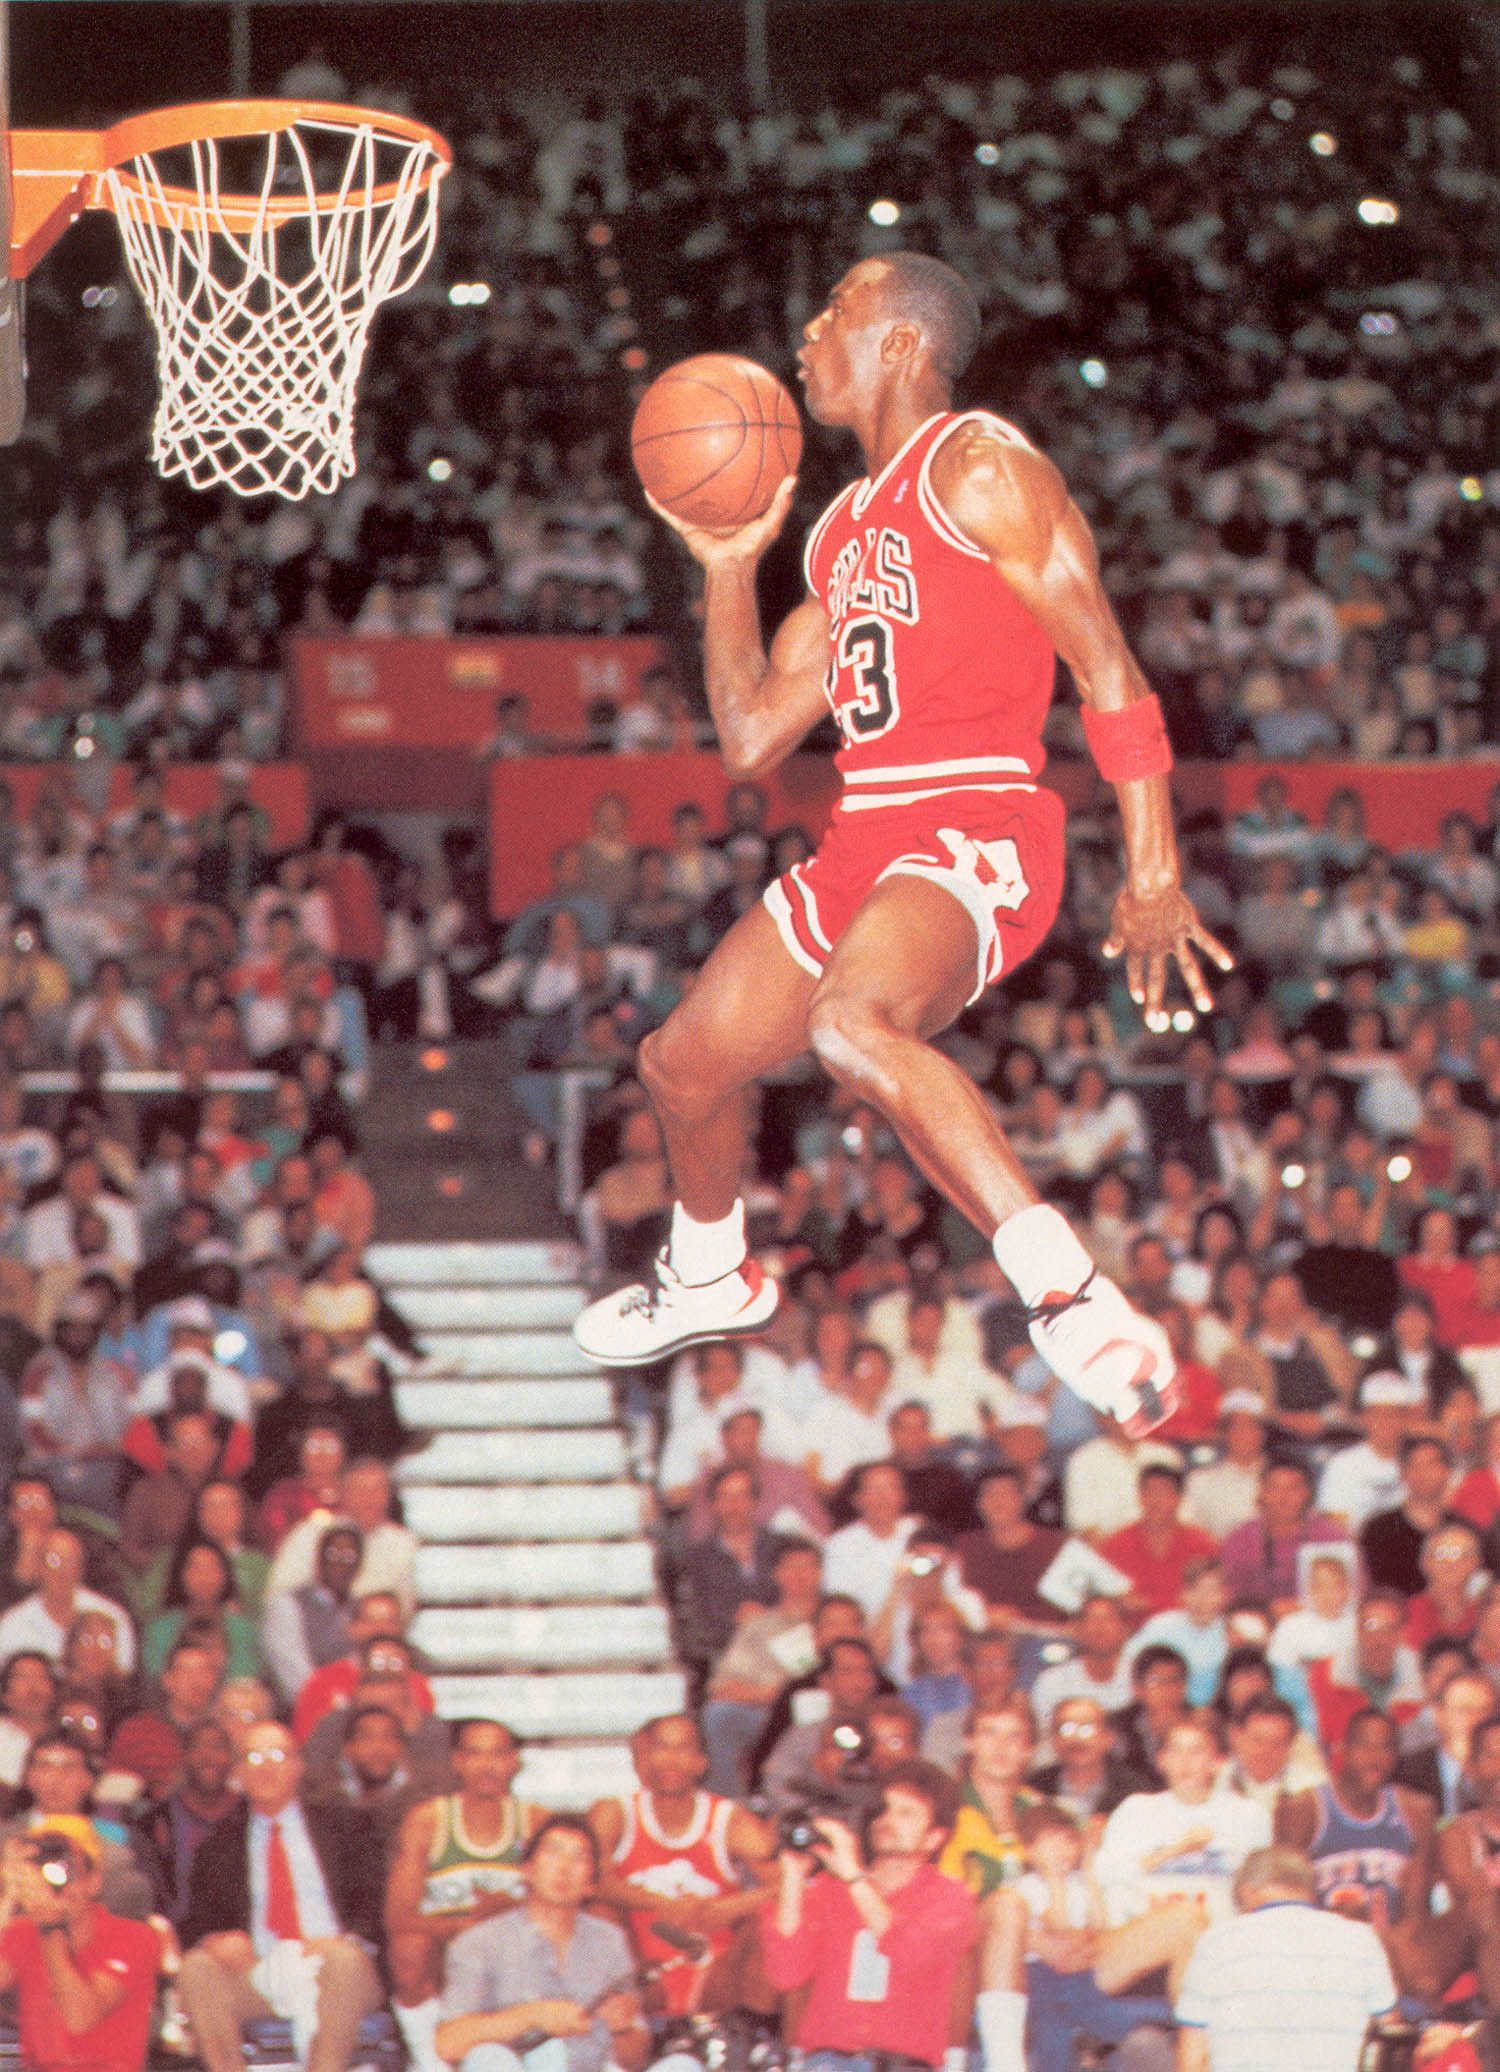 Michael Jordan, in his iconic 1984 Air Jordan shoes, soars above the rim during the 1986 NBA Slam Dunk contest. - Michael Jordan